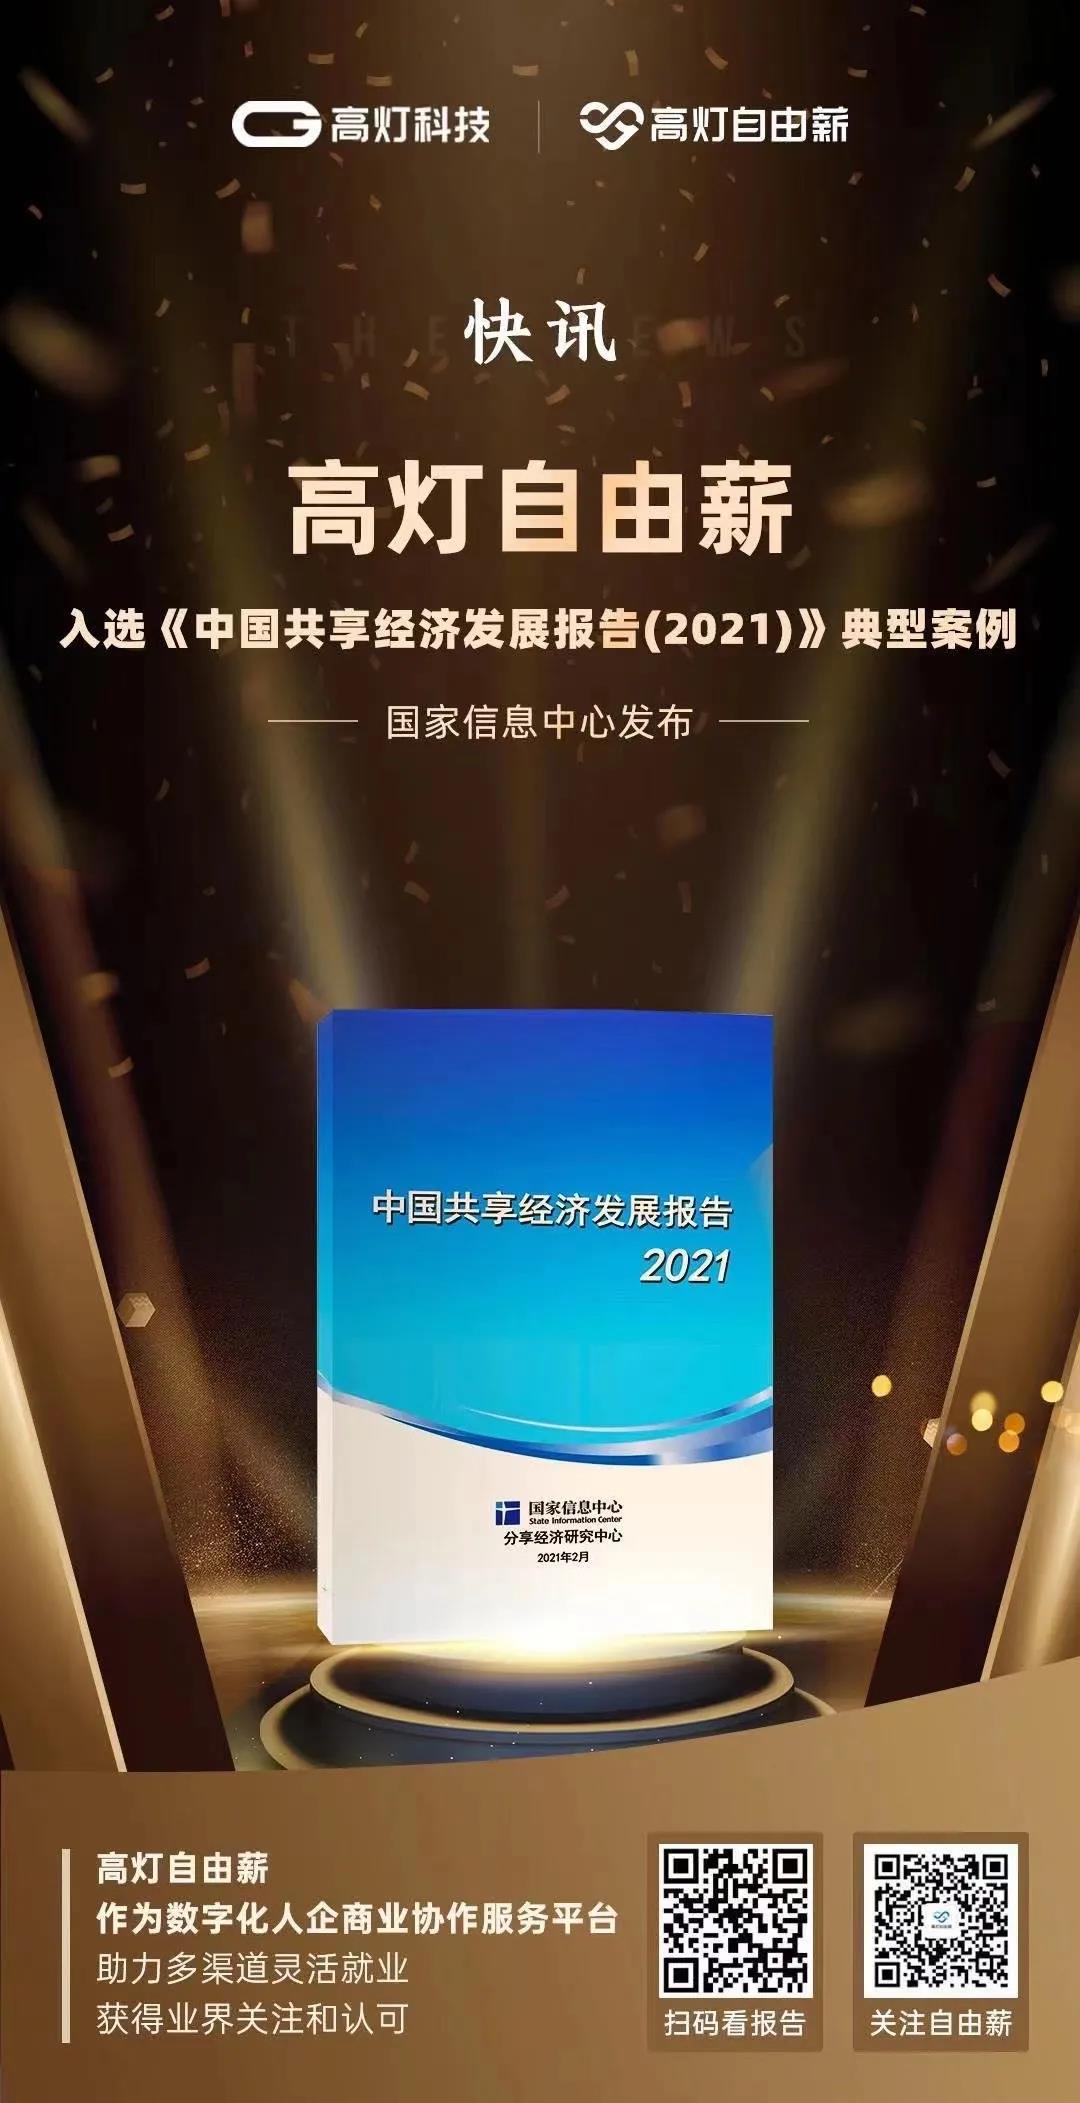 高灯自由薪入选《中国共享经济发展报告2021》典型案例